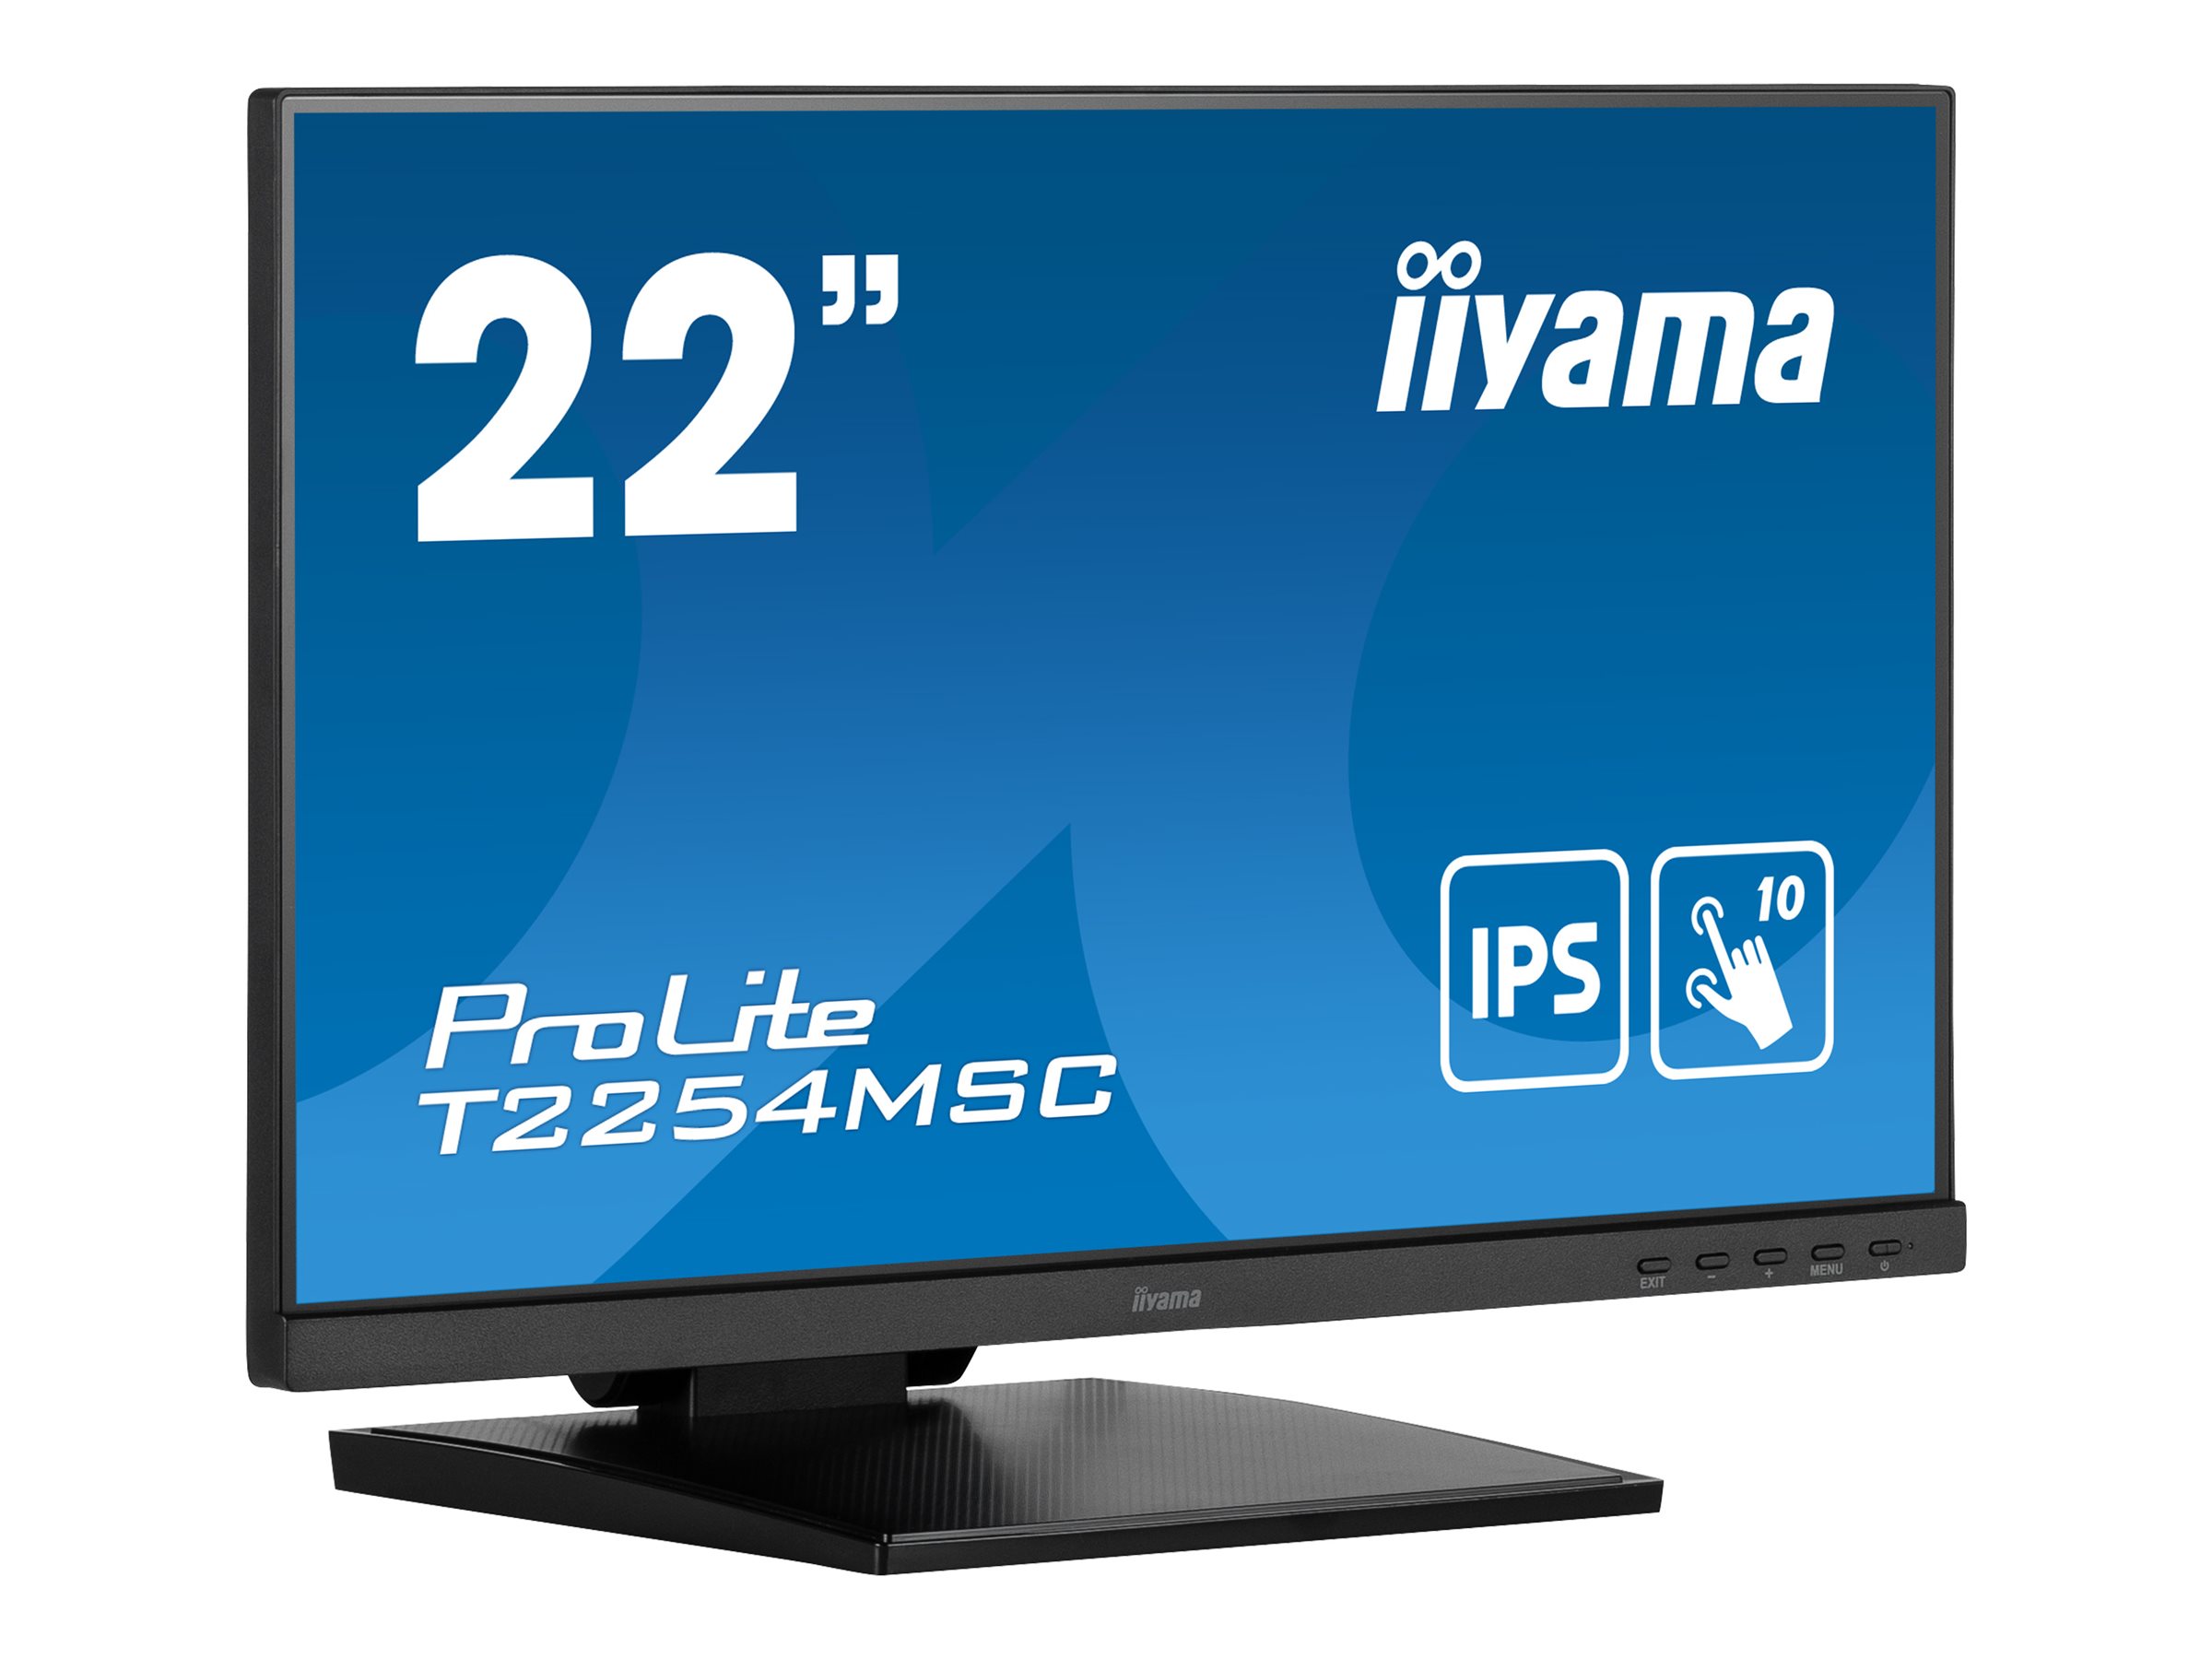 iiyama ProLite T2254MSC-B1AG - Écran LED - 22" (21.5" visualisable) - écran tactile - 1920 x 1080 Full HD (1080p) @ 60 Hz - IPS - 250 cd/m² - 1000:1 - 4 ms - HDMI, DisplayPort - haut-parleurs - noir mat - T2254MSC-B1AG - Écrans d'ordinateur